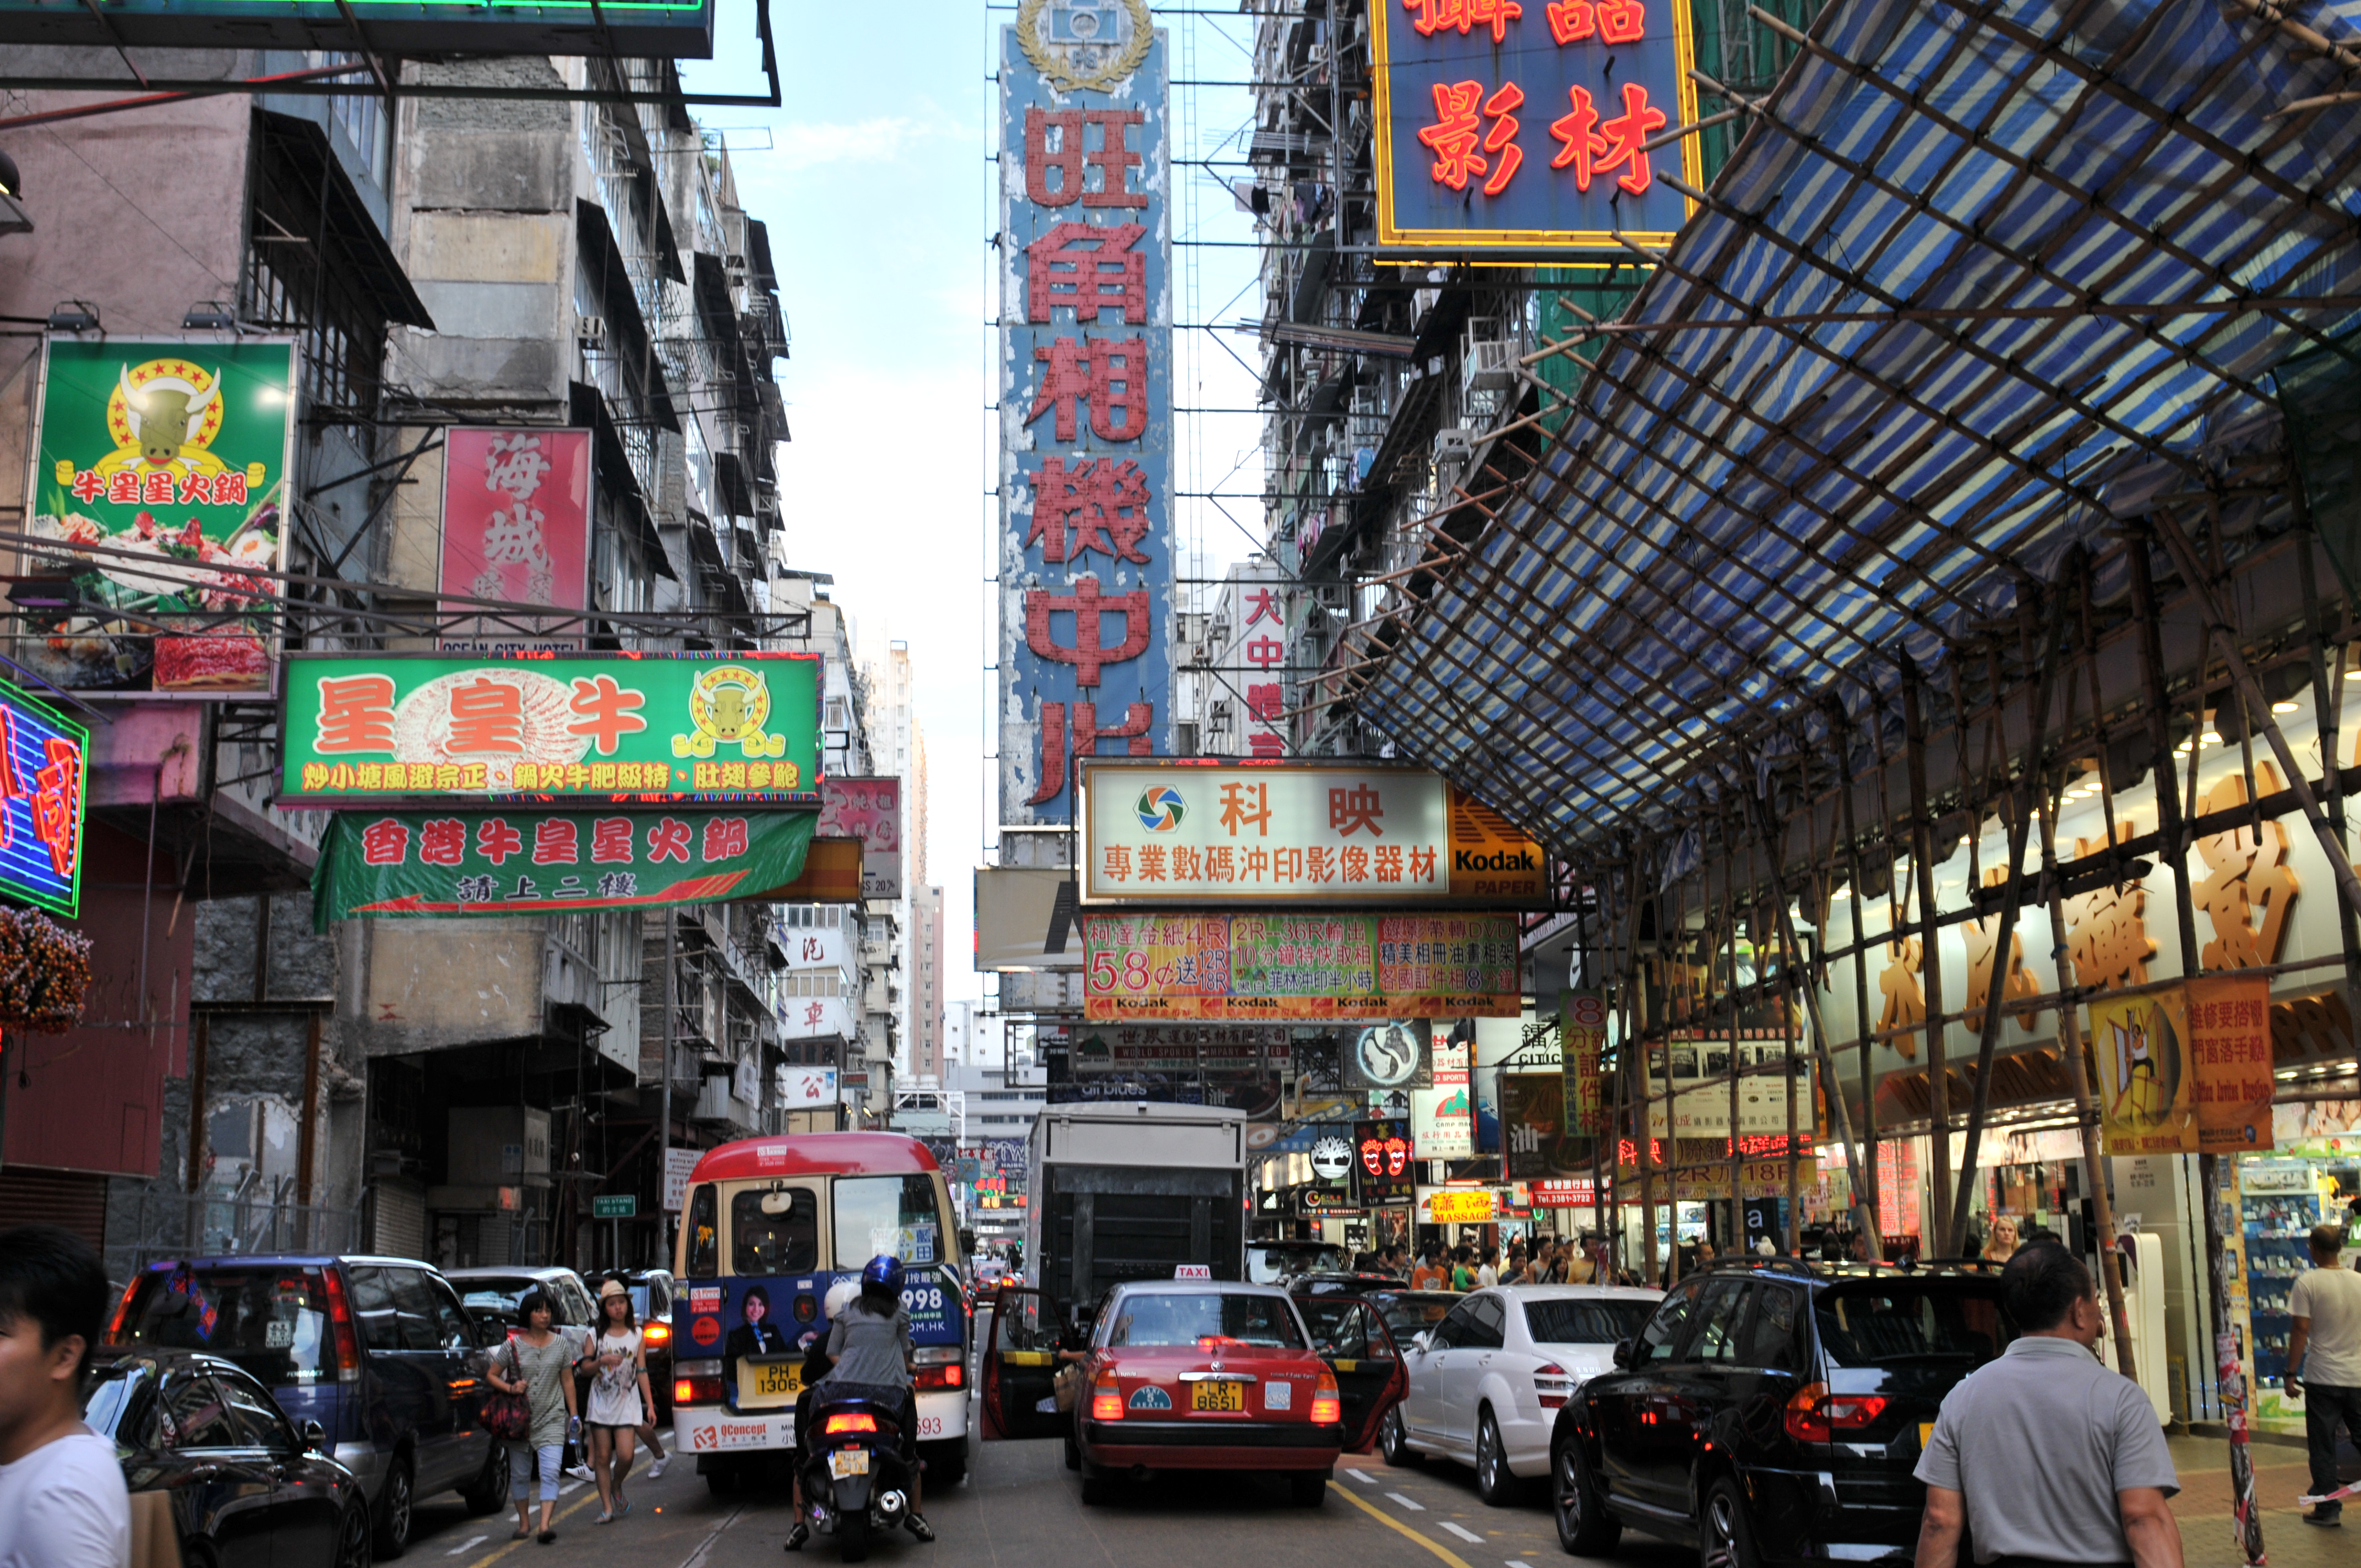 File É¦æ¸¯æºè§ Mongkok Hong Kong China Xinjiang Urumqi Welcome You To Tou Panoramio 11 Jpg Wikimedia Commons